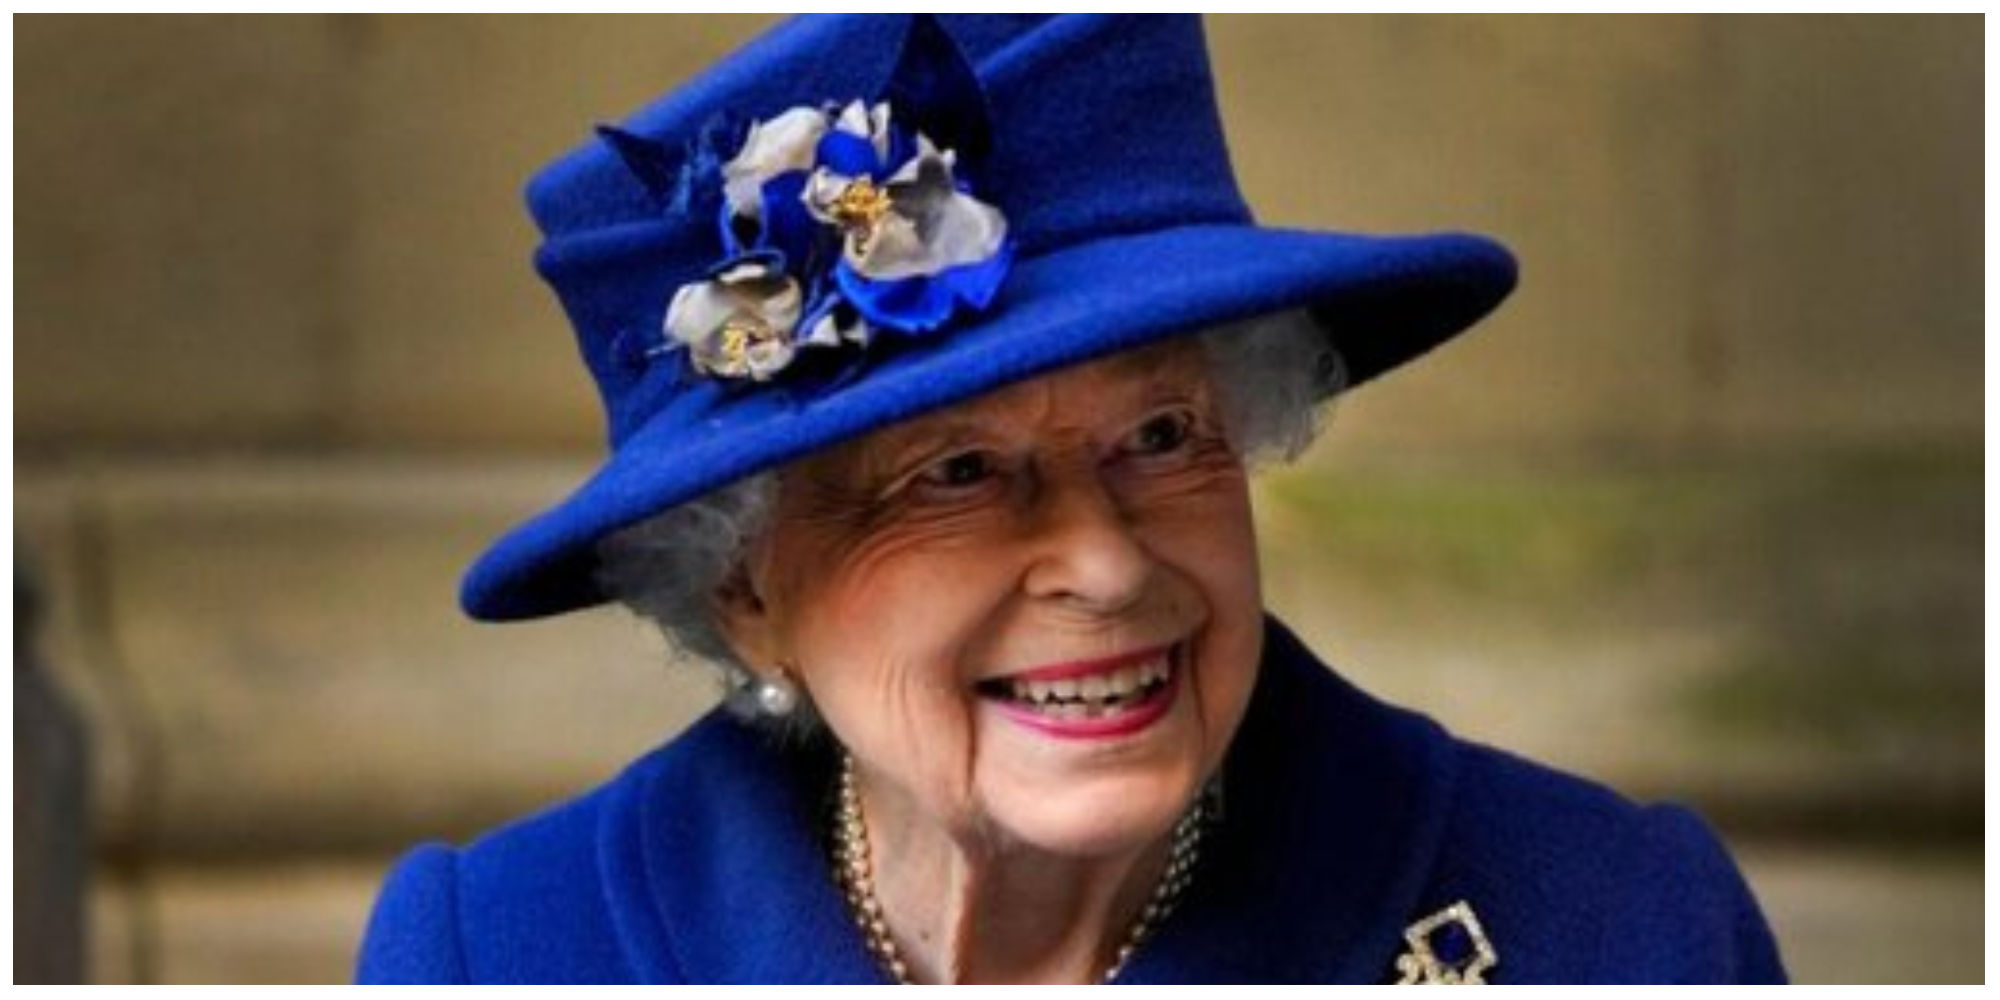 اعضای خاندان سلطنتی بریتانیا نزد ملکه الیزابت رفتند